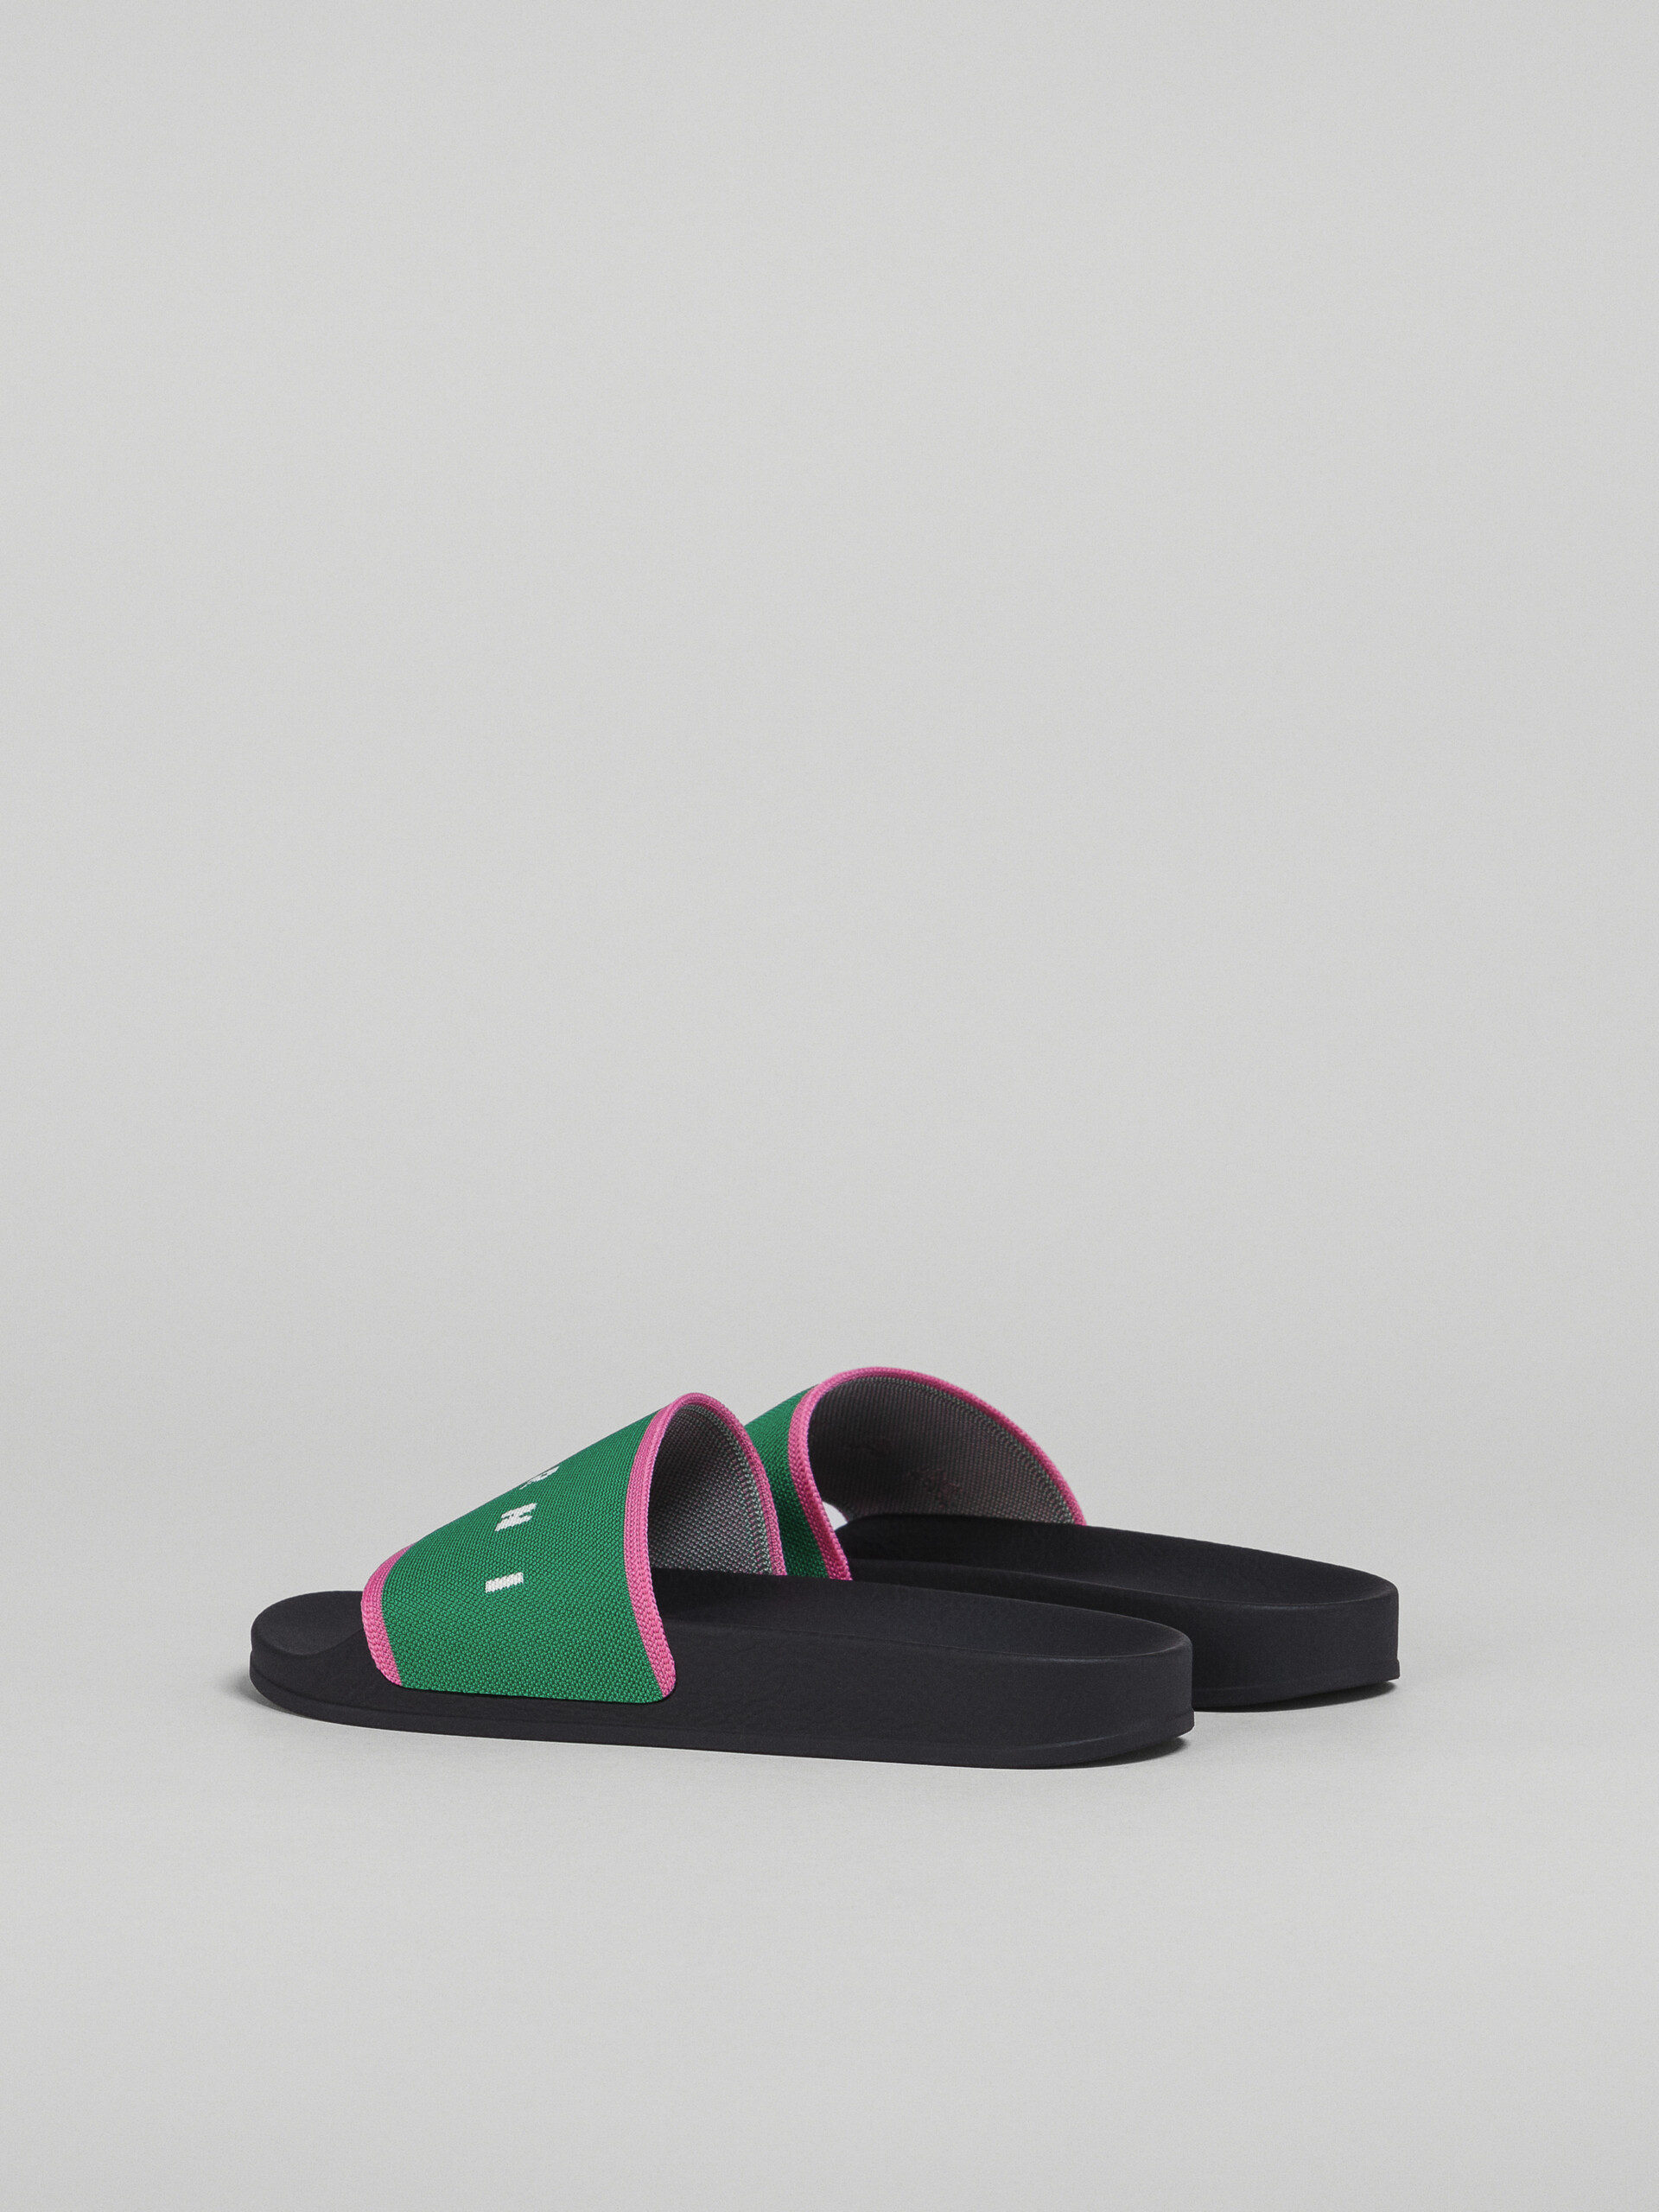 Sandalia de jacquard elástico verde y rosa con logotipo - Sandalias - Image 3